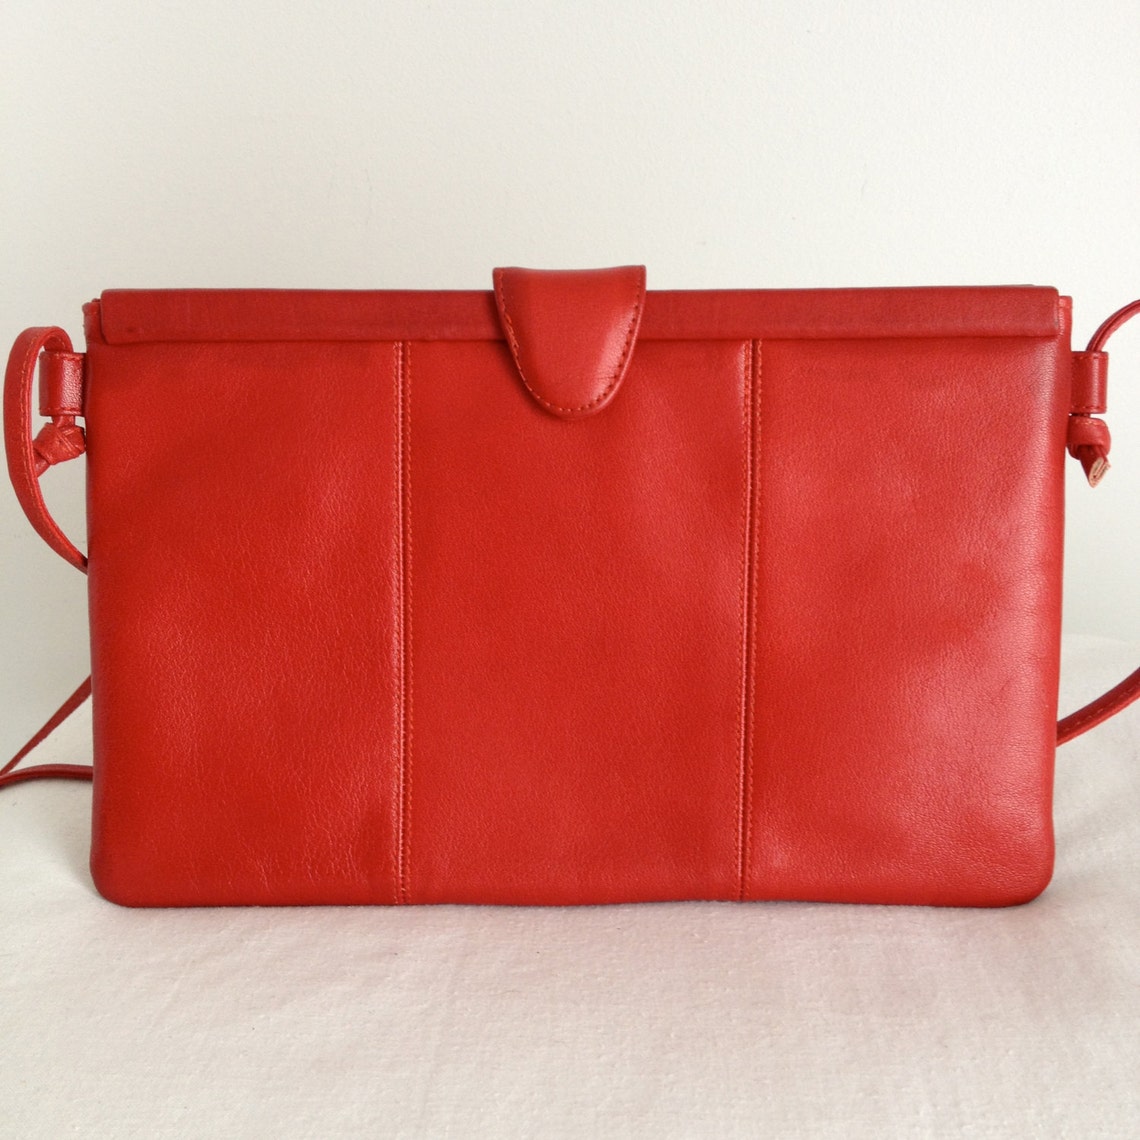 Koret Red Leather Clutch/ Shoulder Bag - Etsy